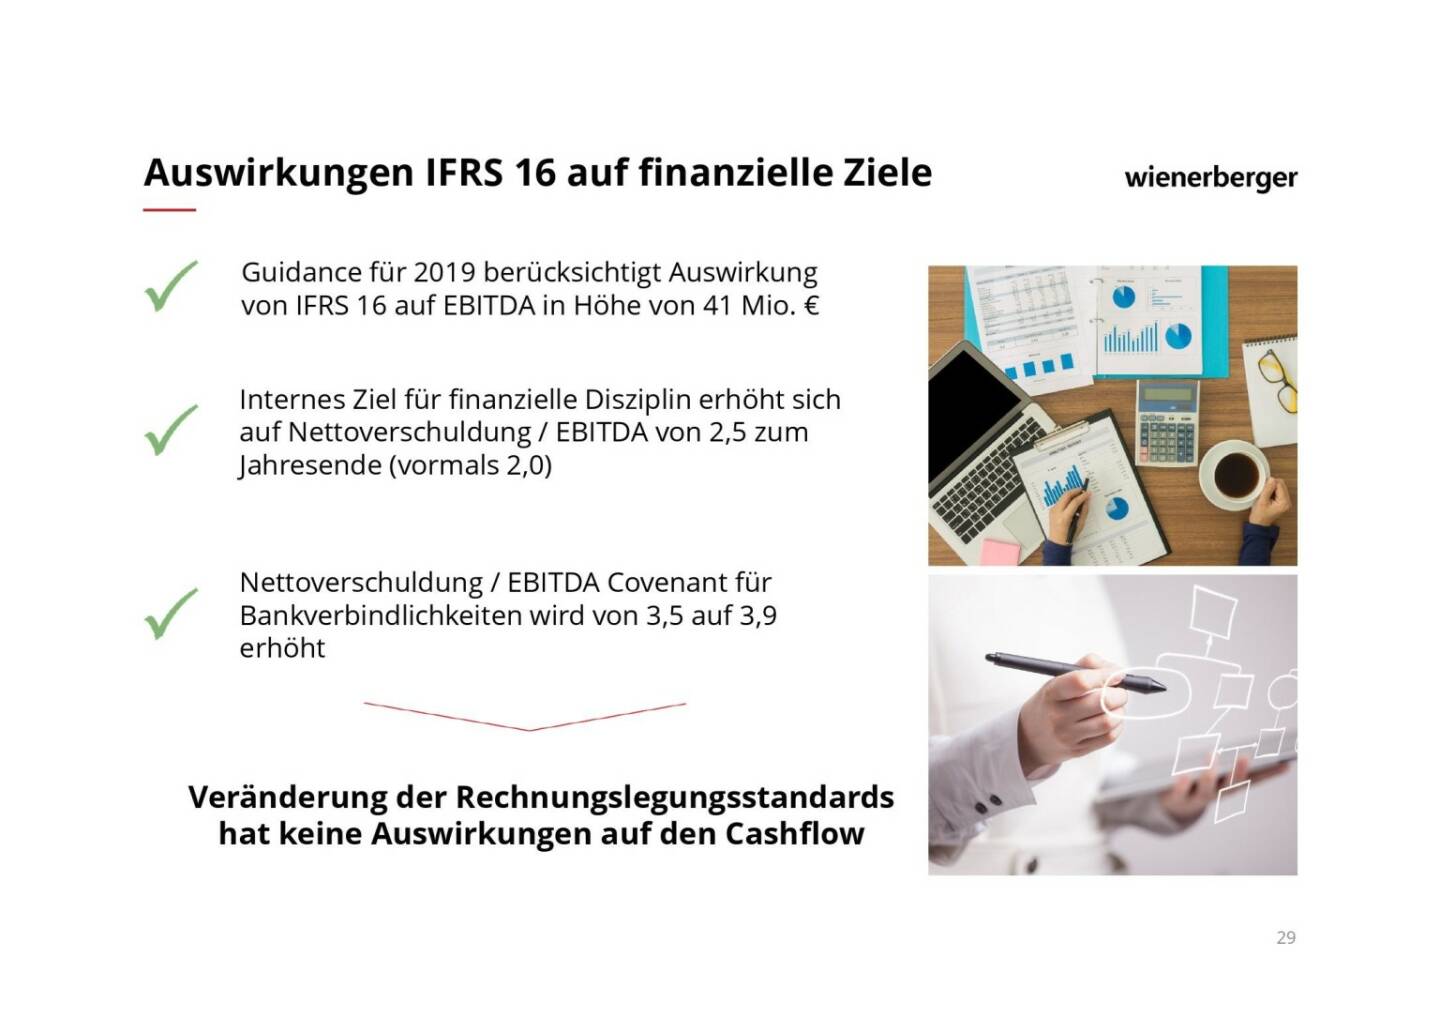 Wienerberger - Auswirkungen IFRS 16 auf finanzielle Ziele